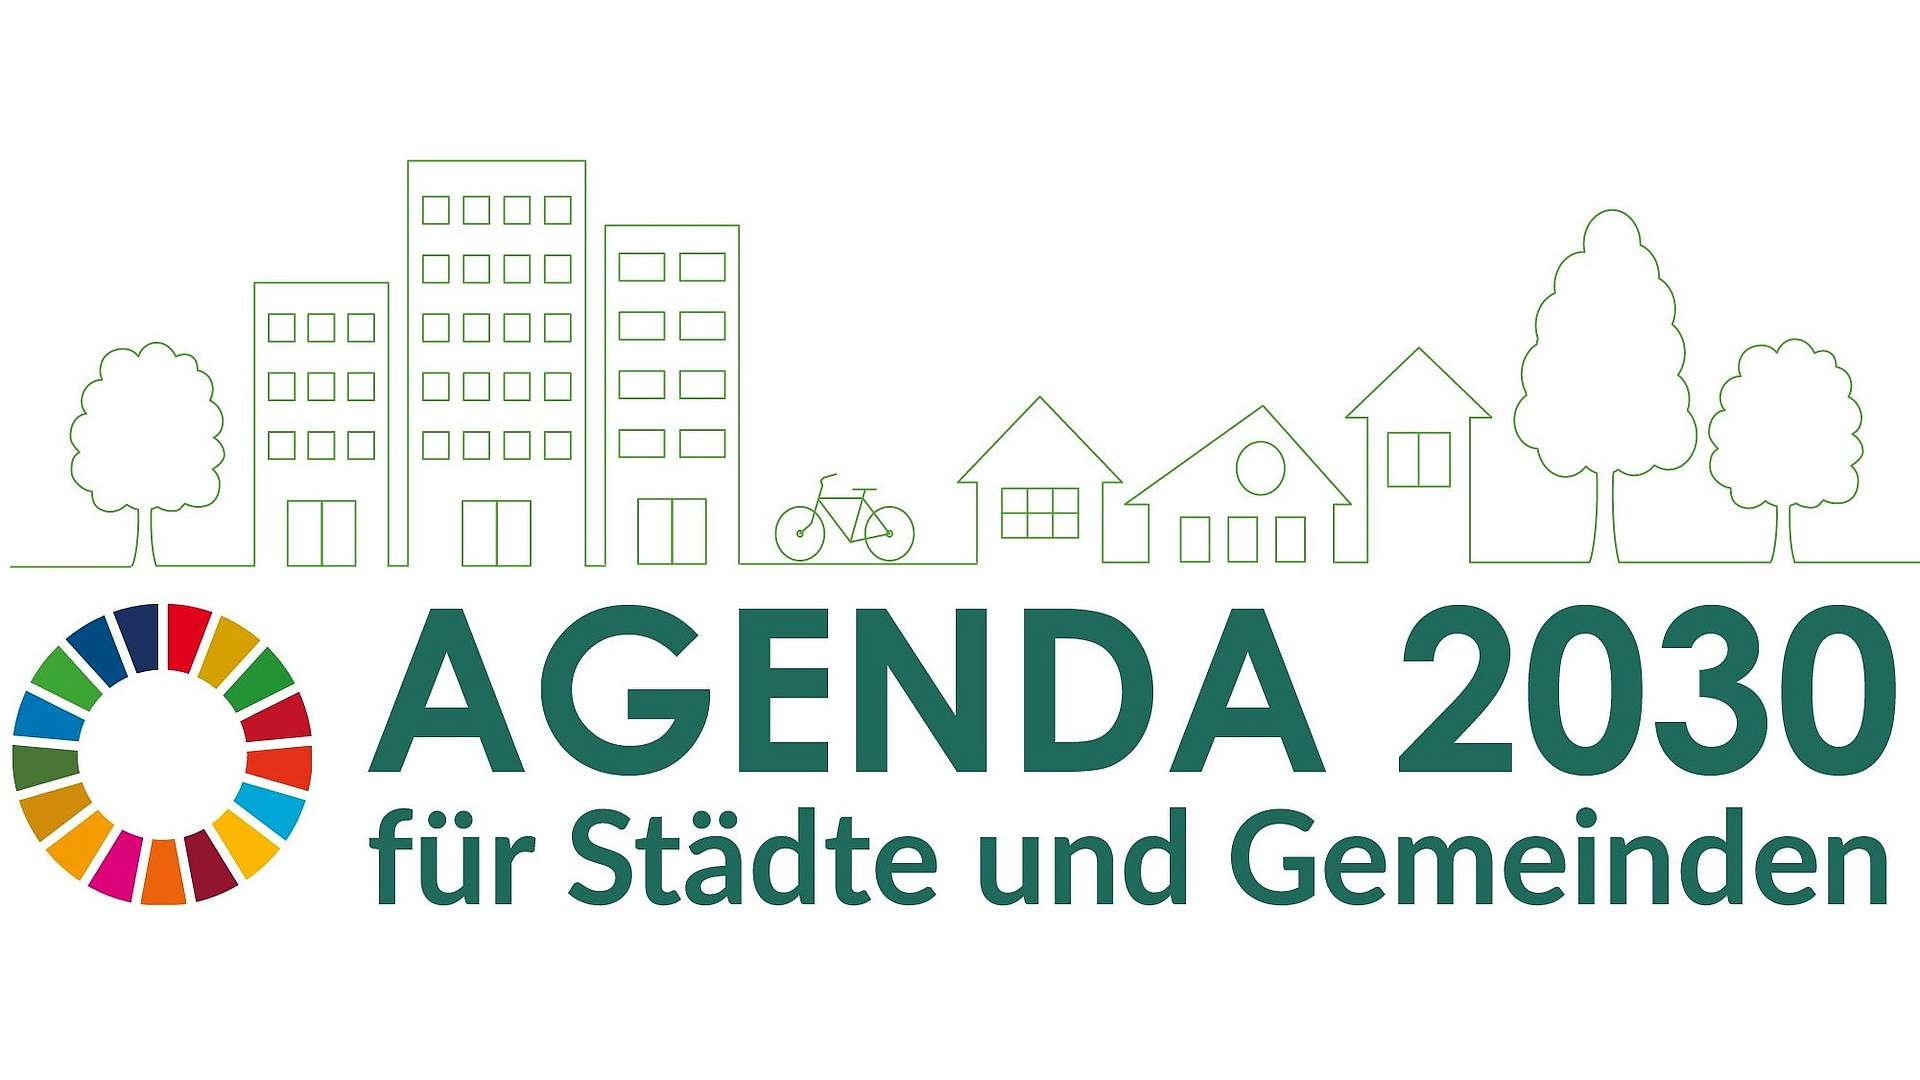 Grafische Darstellung mit Aufschrift "Agenda 2030 für Städte und Gemeinden"